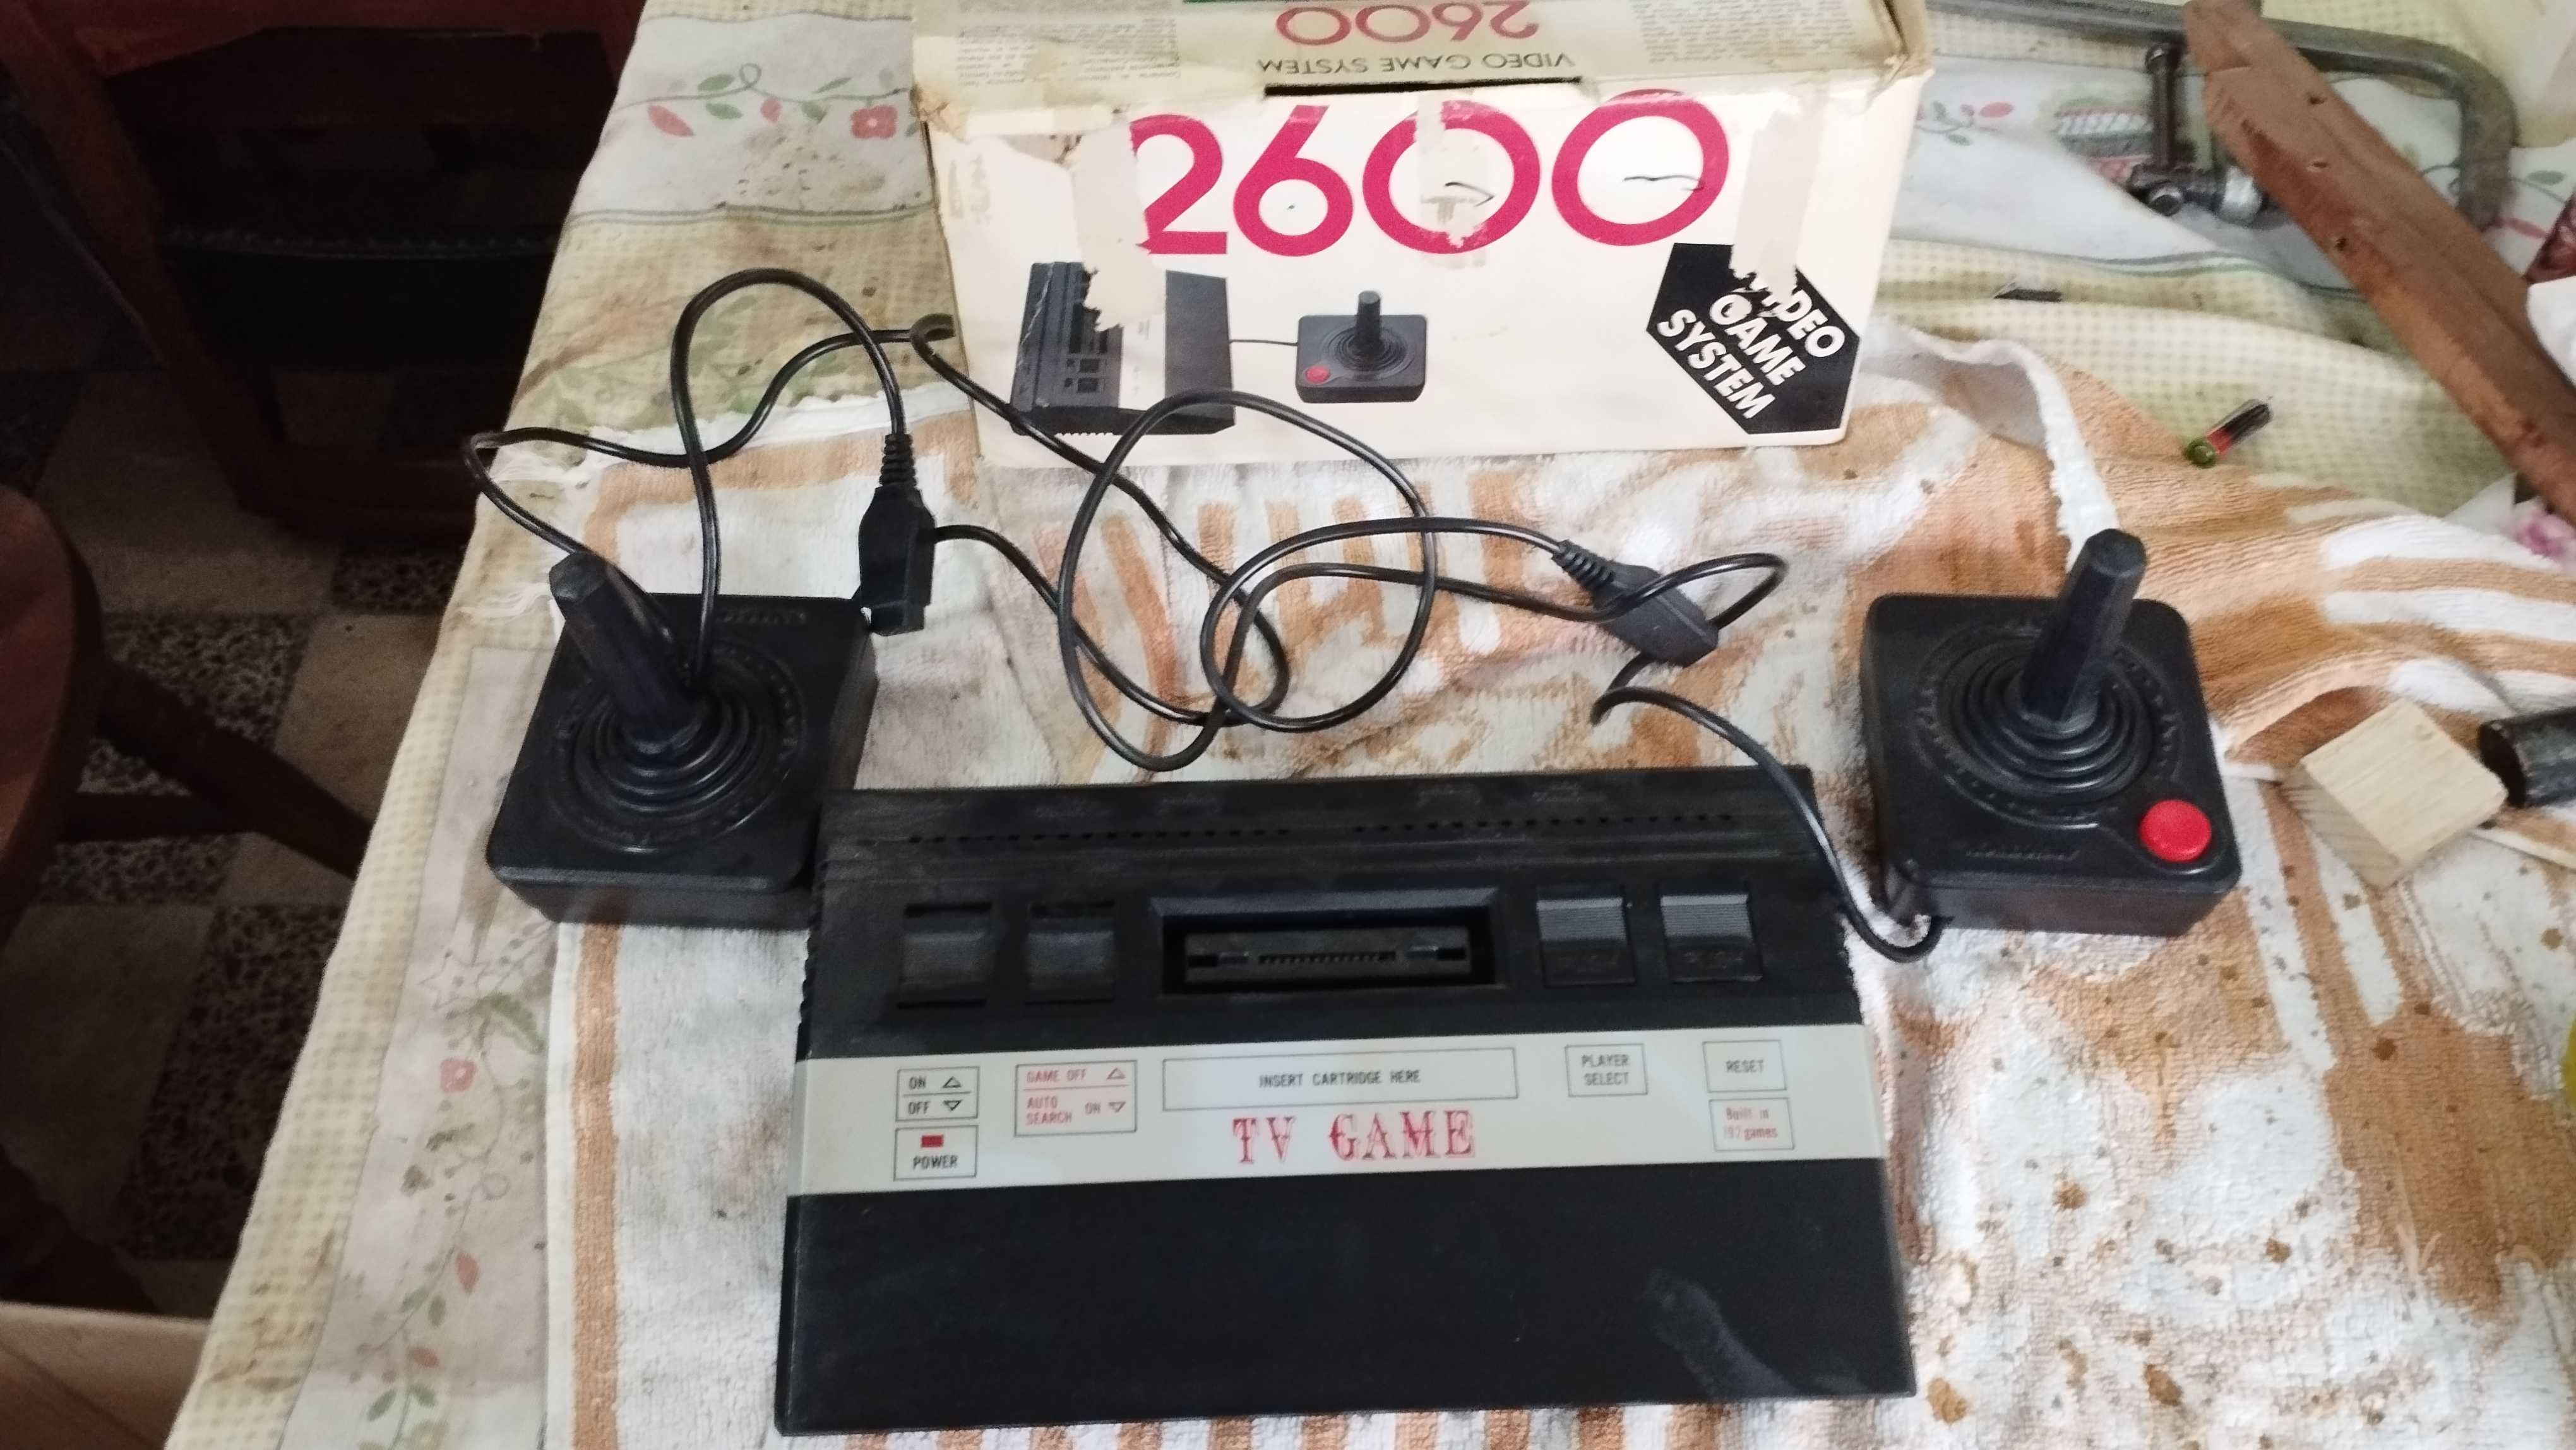 Consola TV game system 2600 no HU